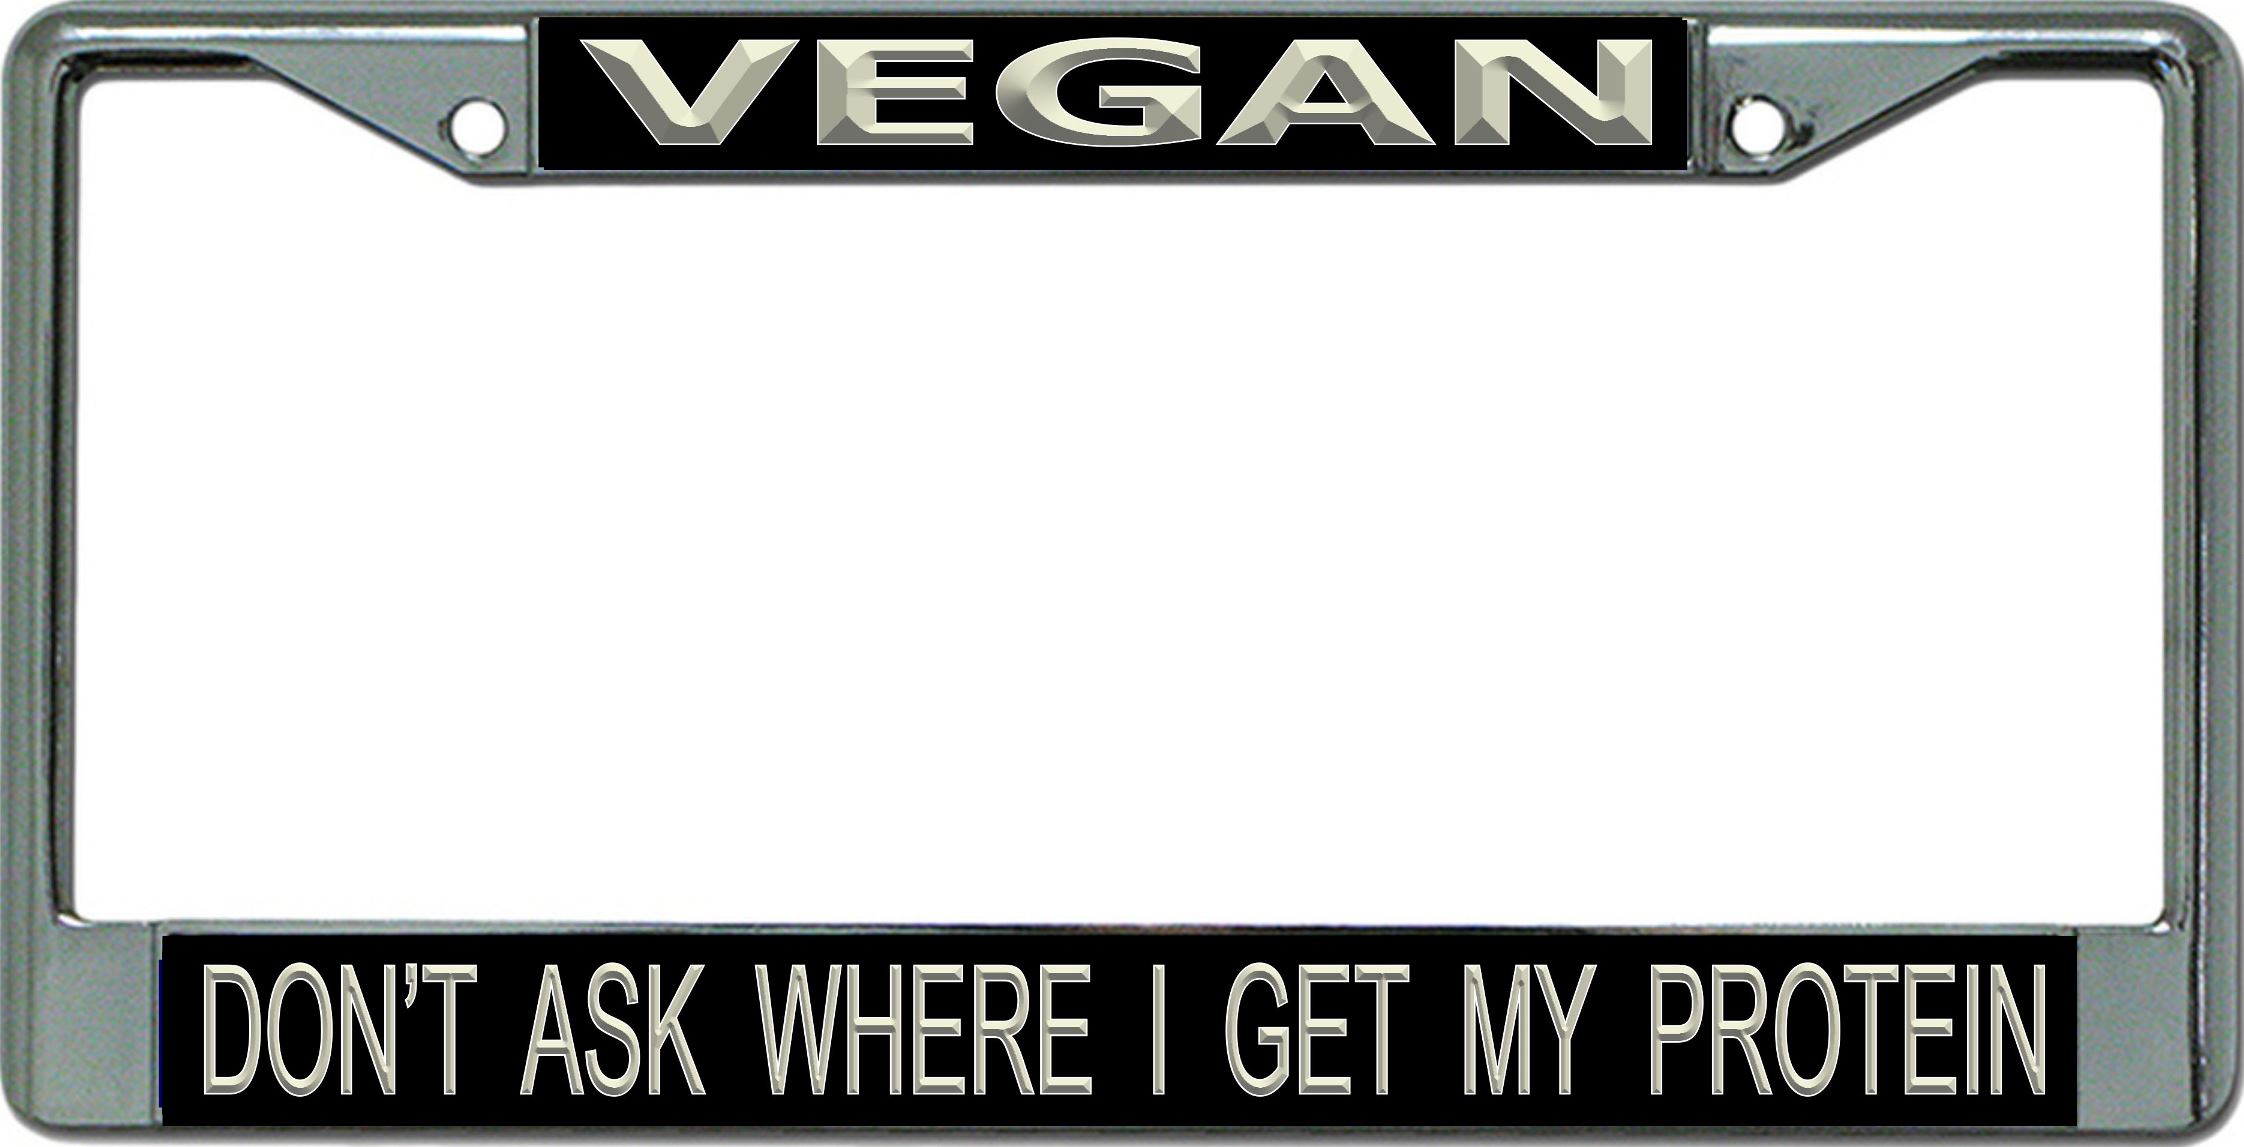 Vegan Don't Ask Chrome License Plate FRAME